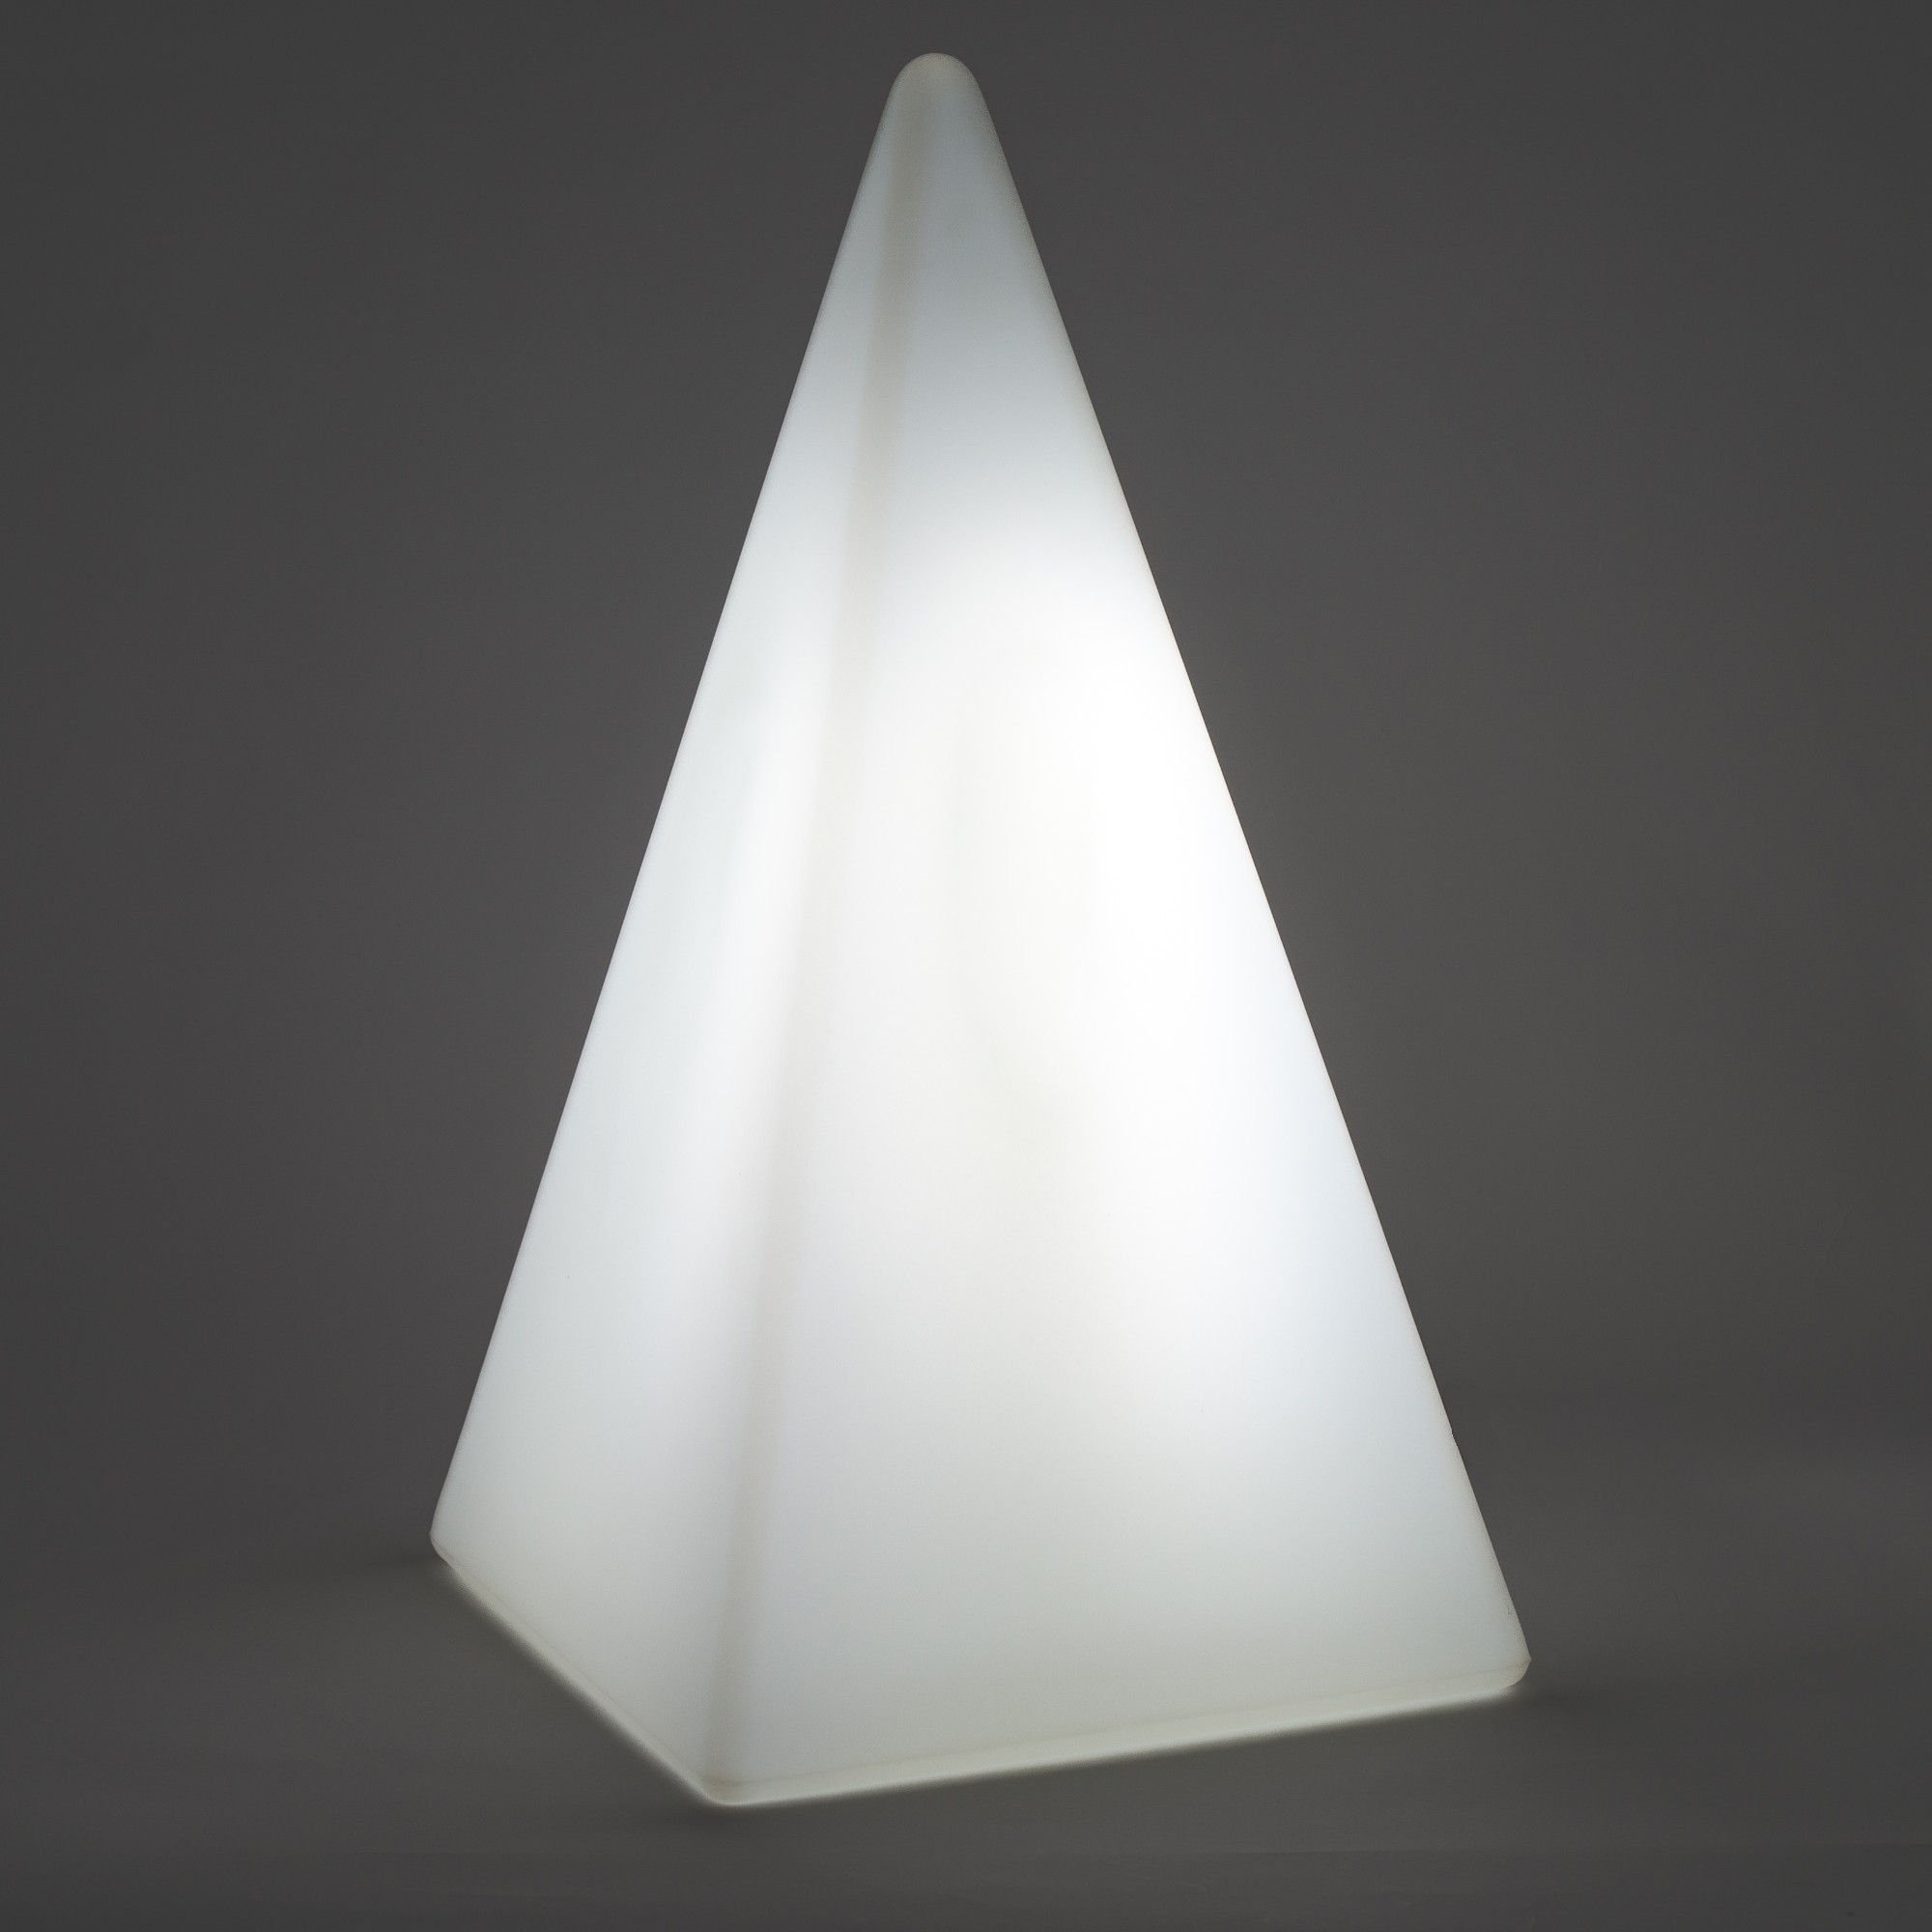 70206 Standleuchte Pyramide 54 cm der Firma EPSTEIN Design Leuchten